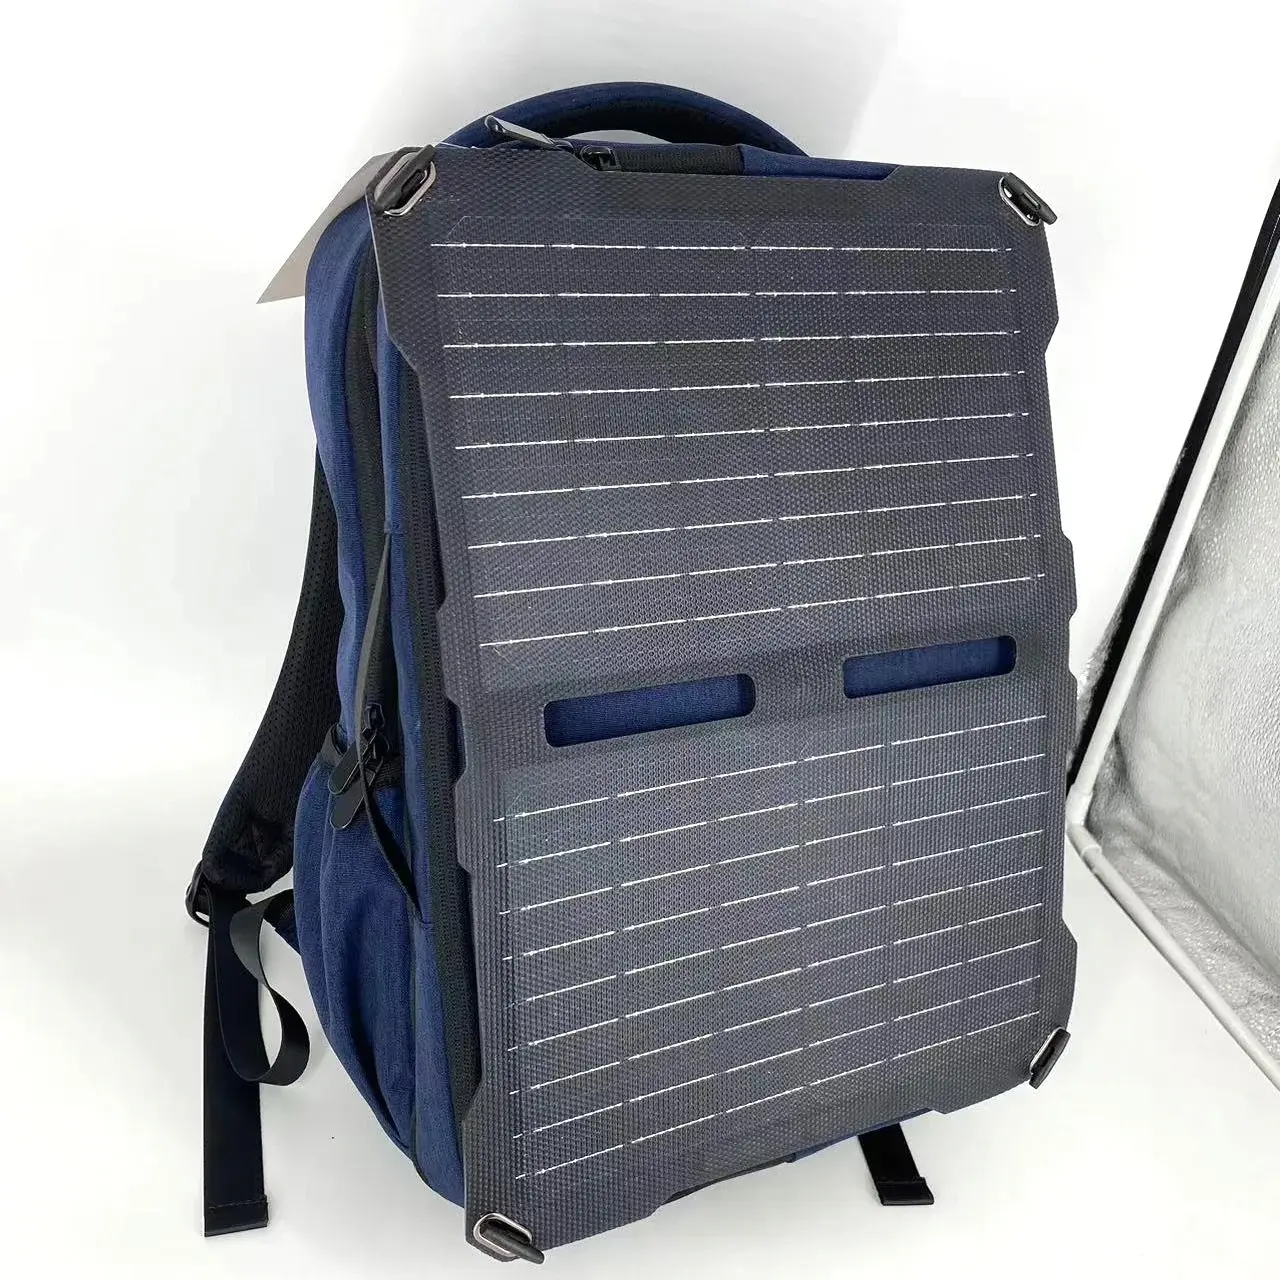 Mochila Solar Caminhada, Carregador solar USB esportes mochila ao ar livre, Correndo Mochila Multi-Purpose Camping